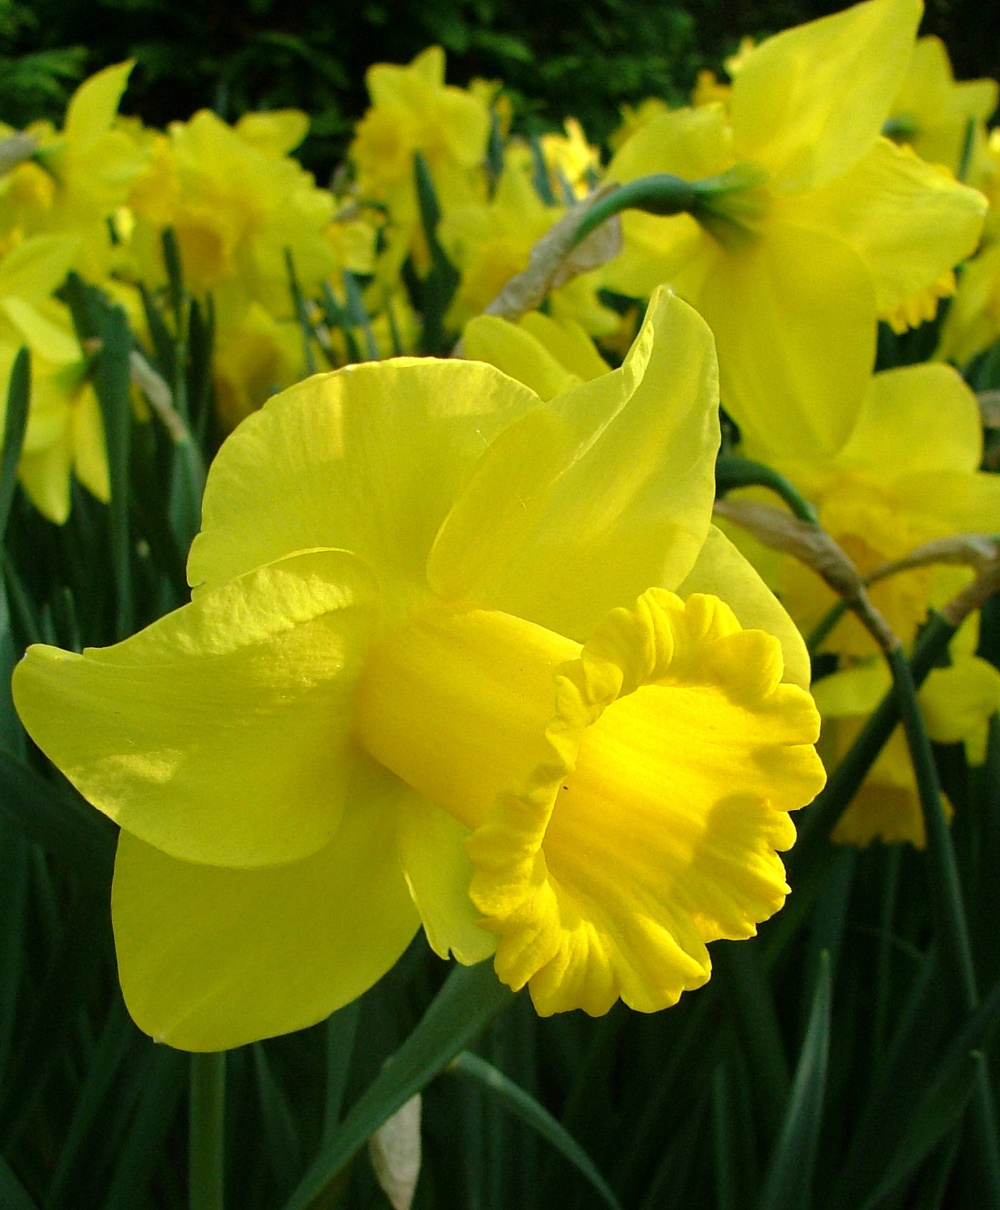 Trumpet Daffodils